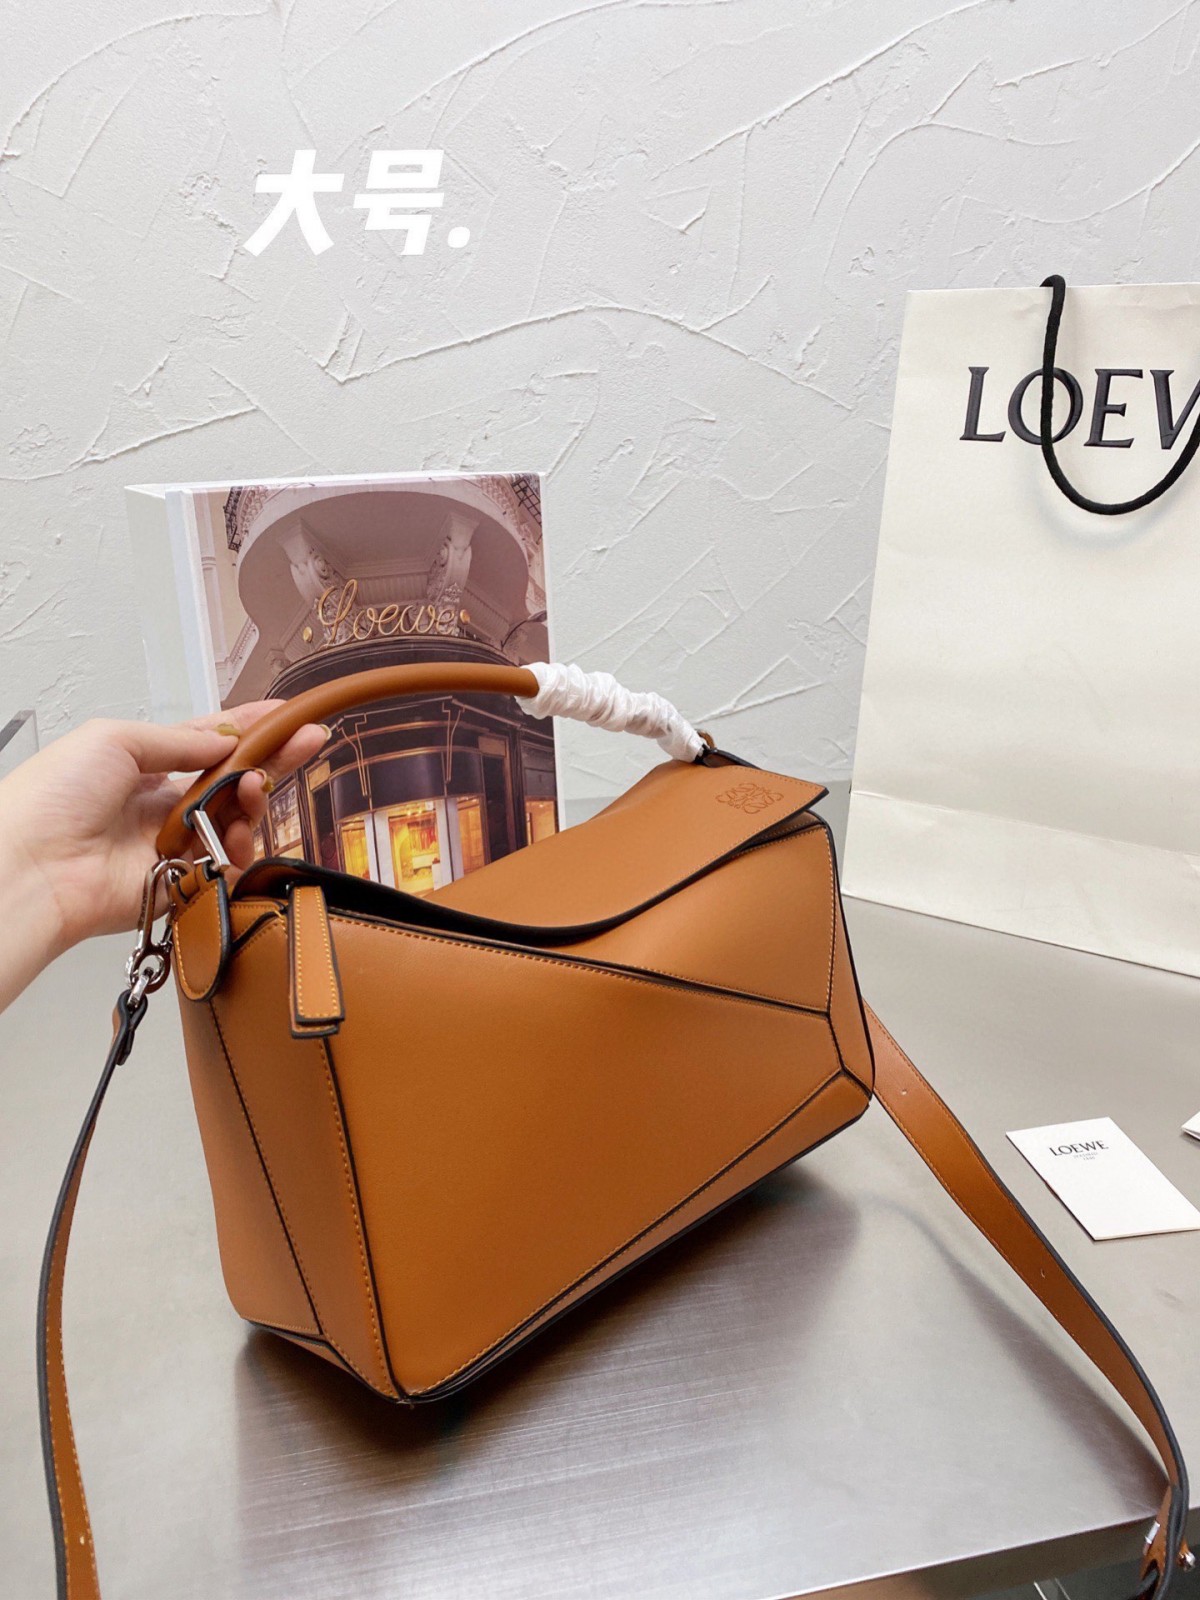 Kvalitné a lacné replikové tašky Loewe Puzzle, cena je len 199 dolárov? (Najnovšie z roku 2022) – online obchod s falošnou taškou Louis Vuitton najvyššej kvality, replika značkovej tašky ru